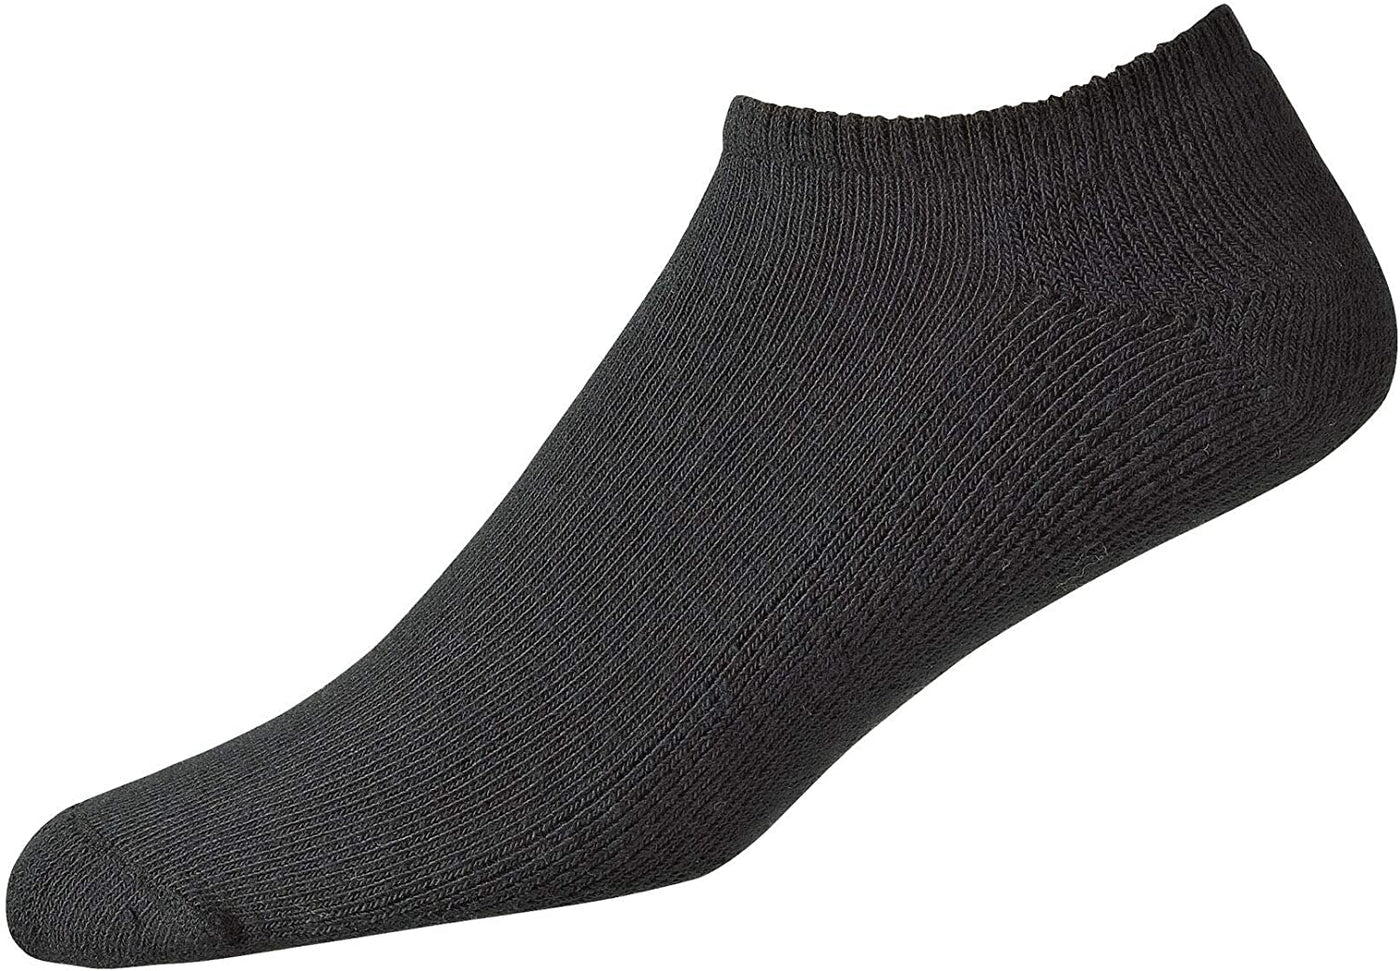 FootJoy- ComfortSof Low Cut Women's Socks Black (Style#: 19255)